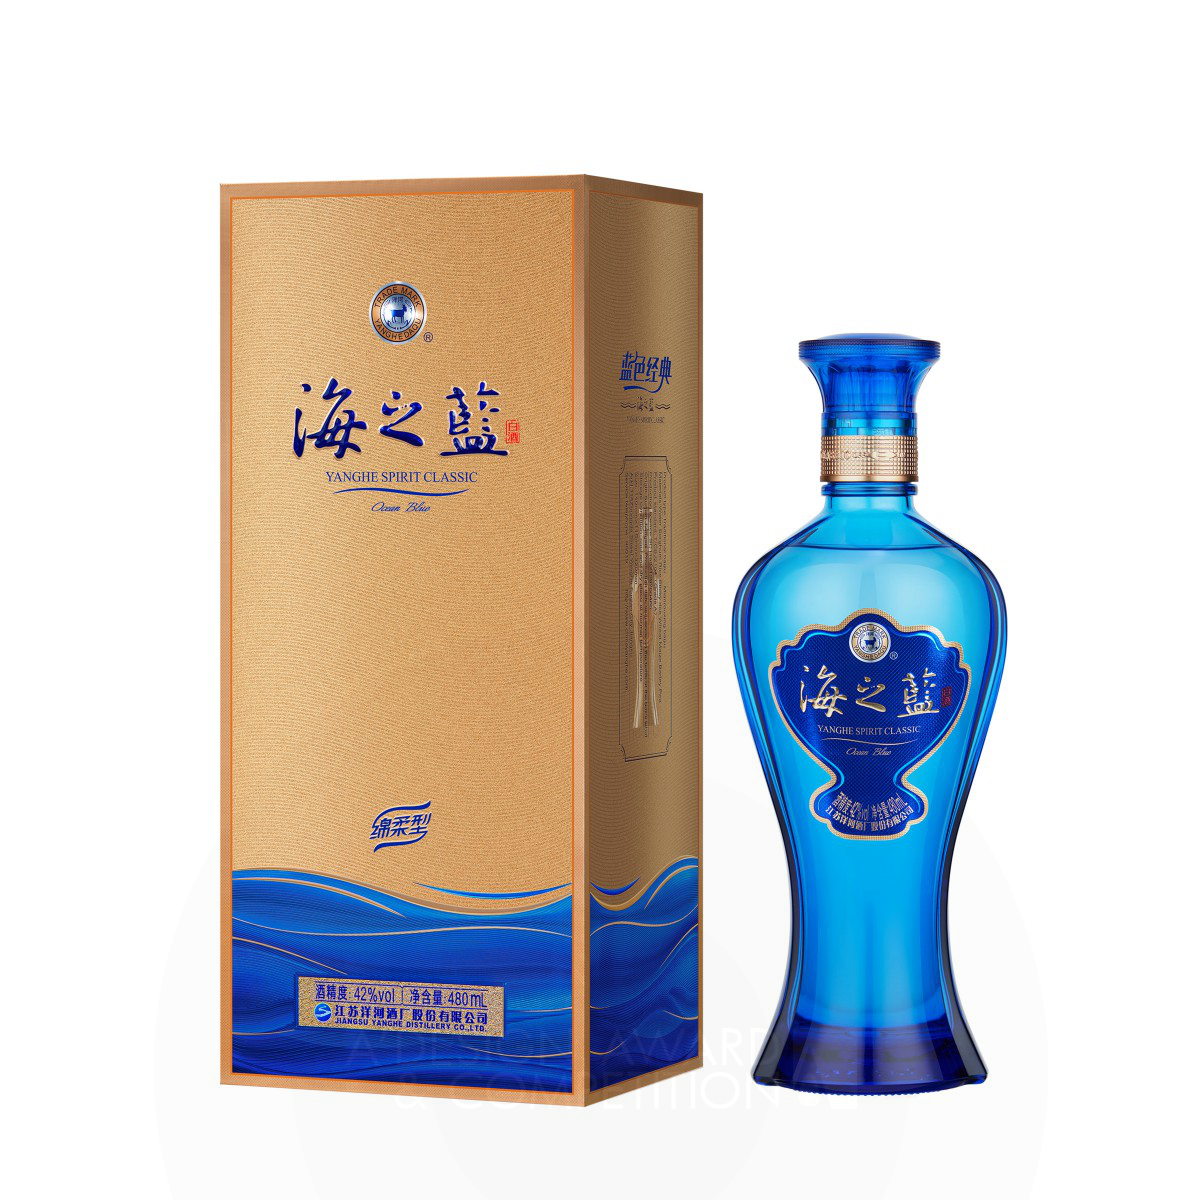 Ocean Blue Alcoholic Beverage Packaging Design by Wen Liu